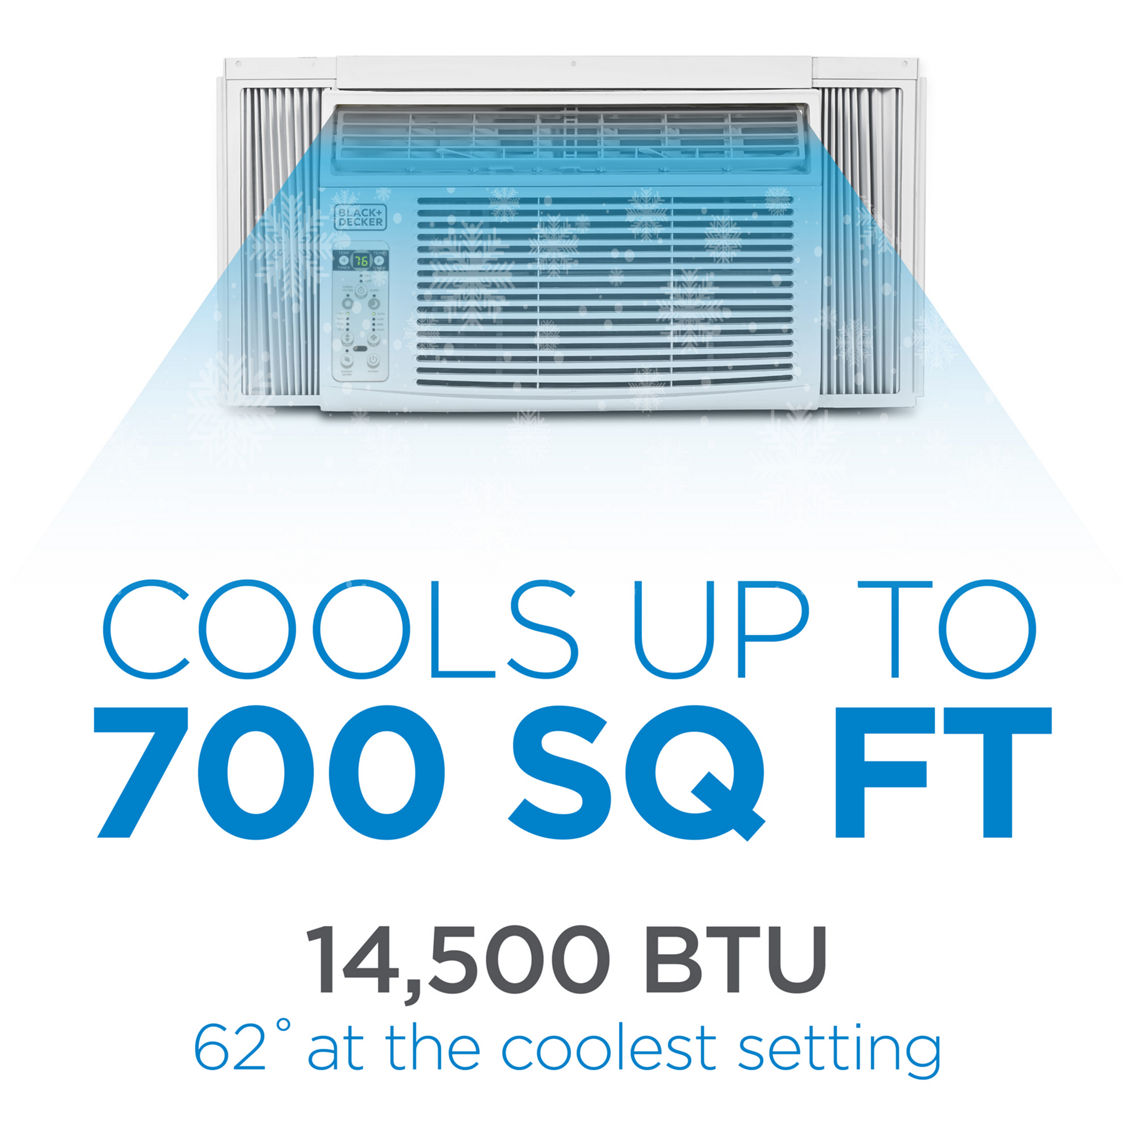 Black & Decker 14,500 BTU Window Air Conditioner with Remote